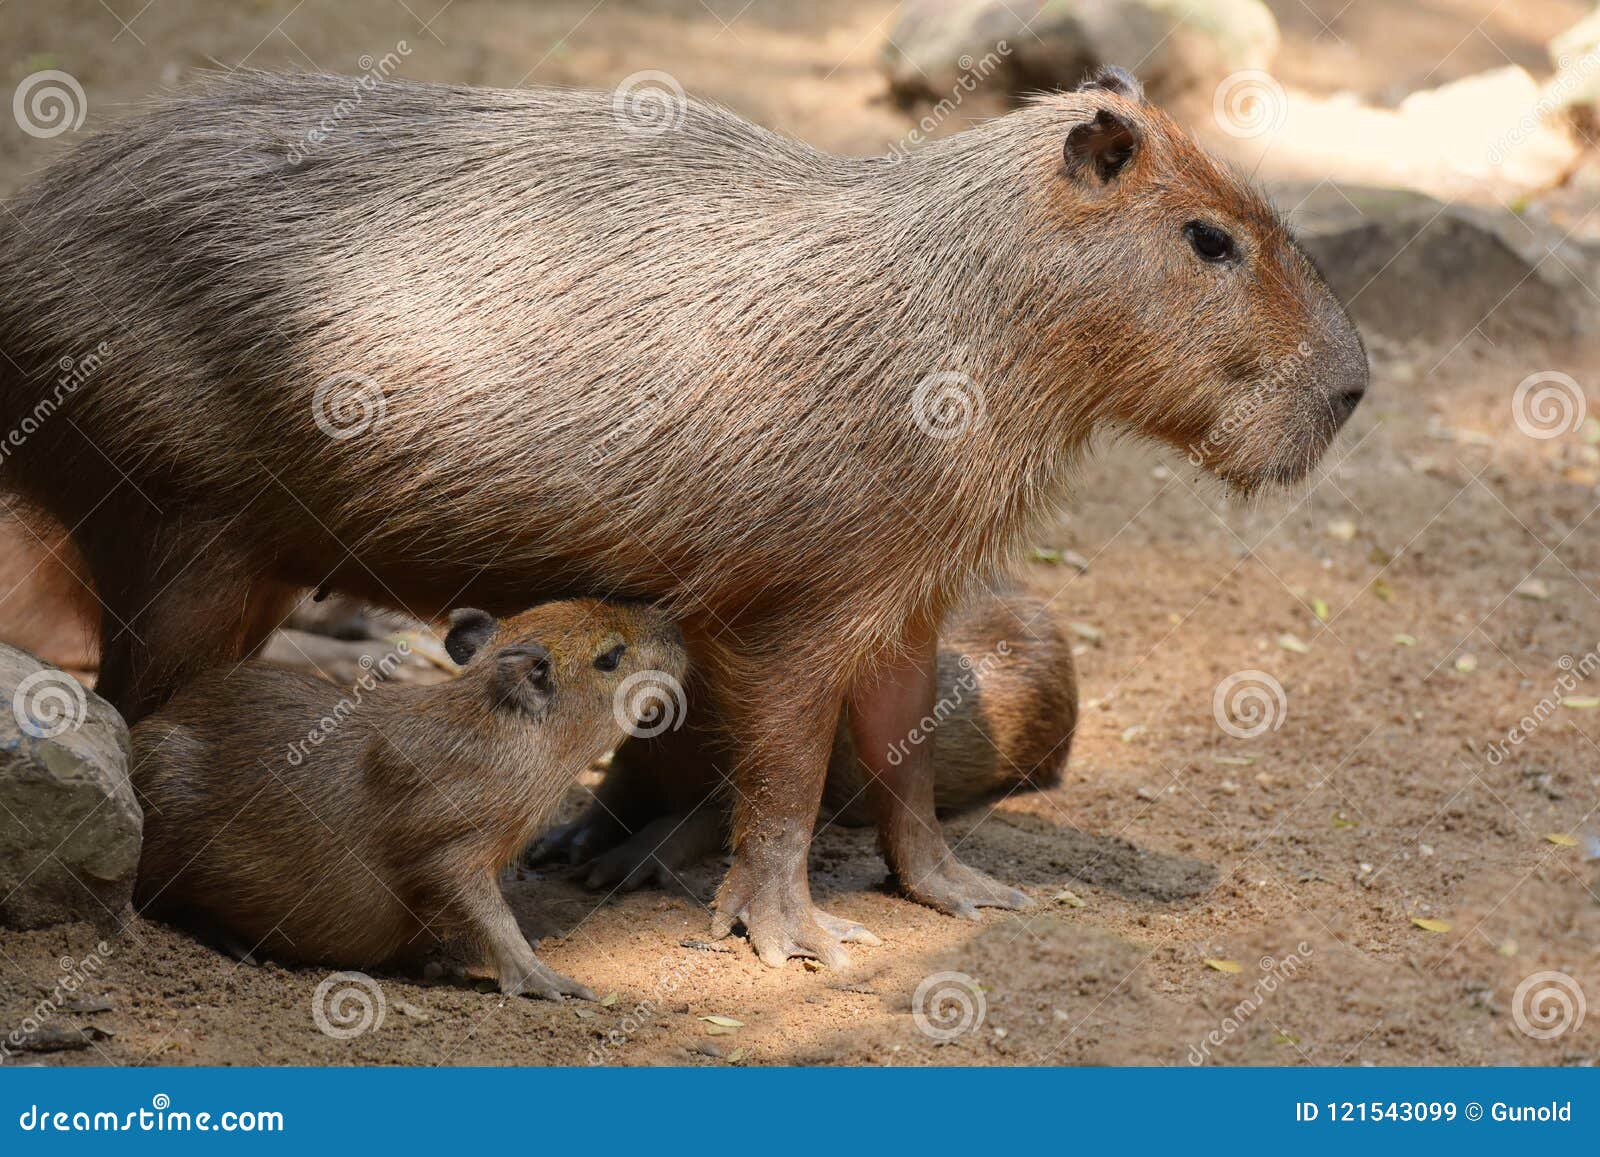 capybara patiently suckles his baby